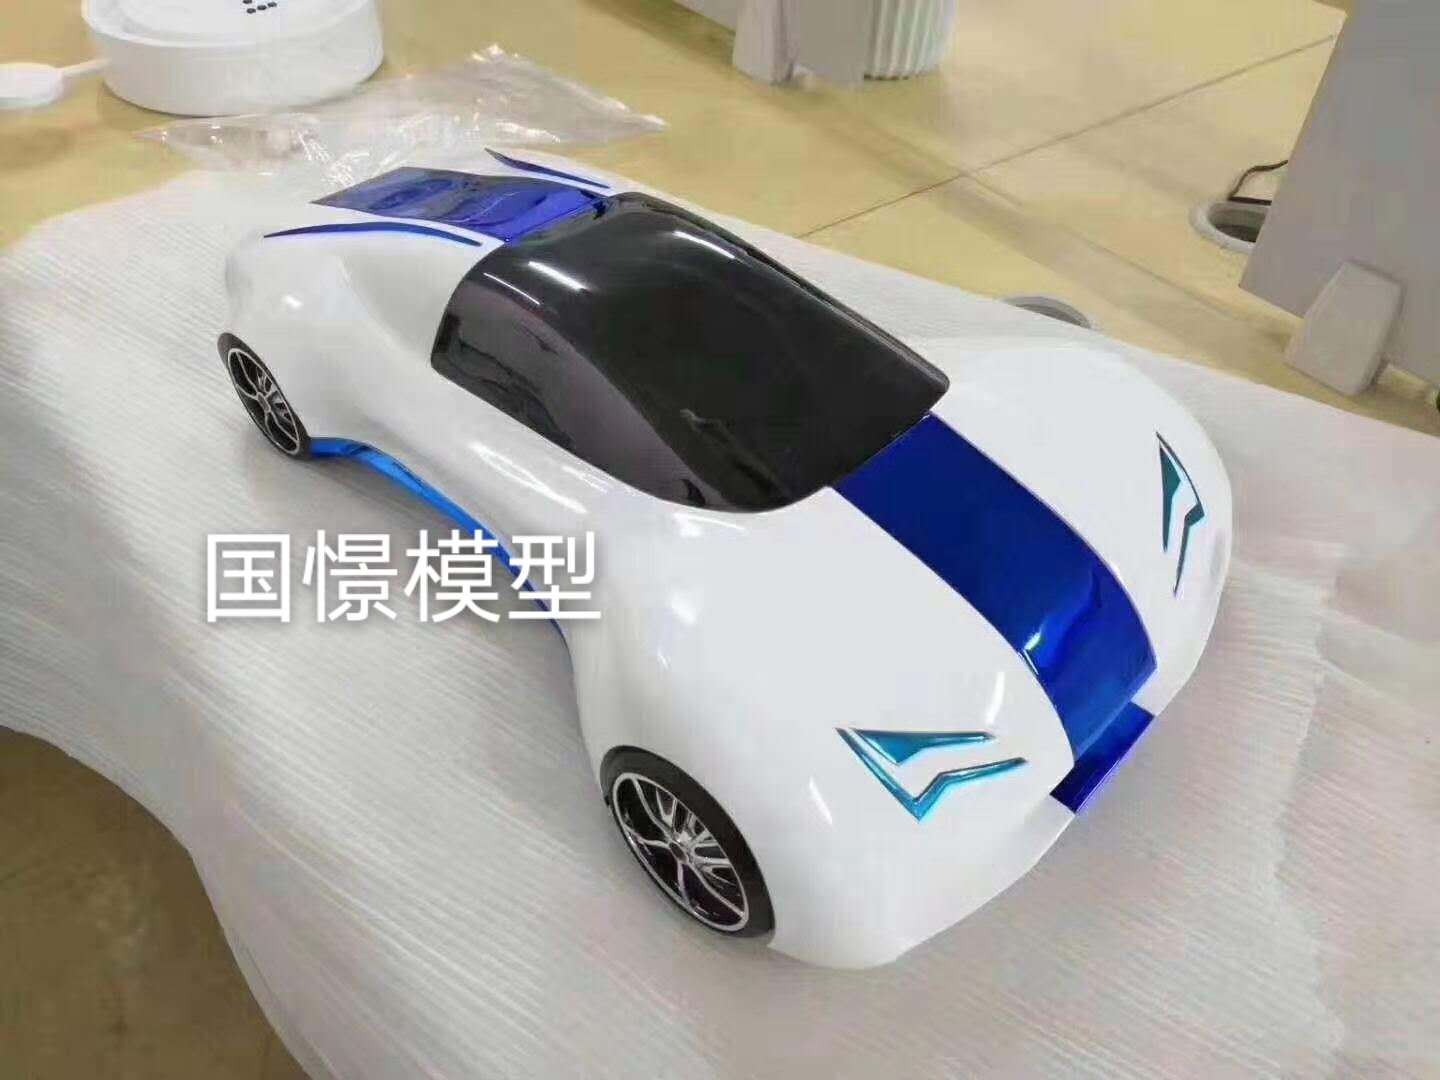 凤凰县车辆模型